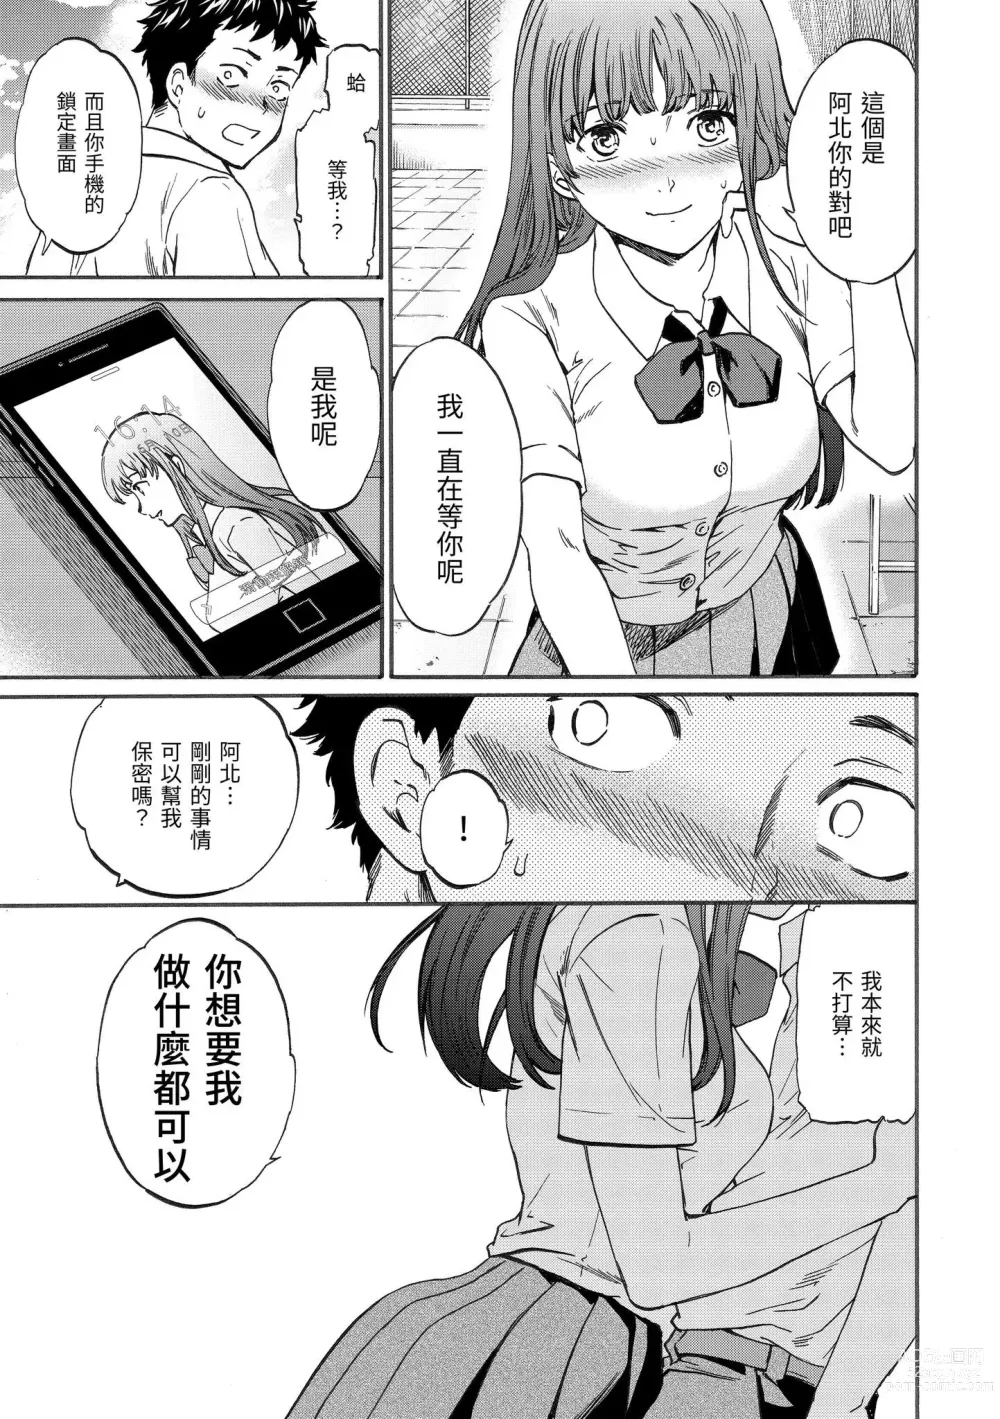 Page 10 of manga 柔情泥濘